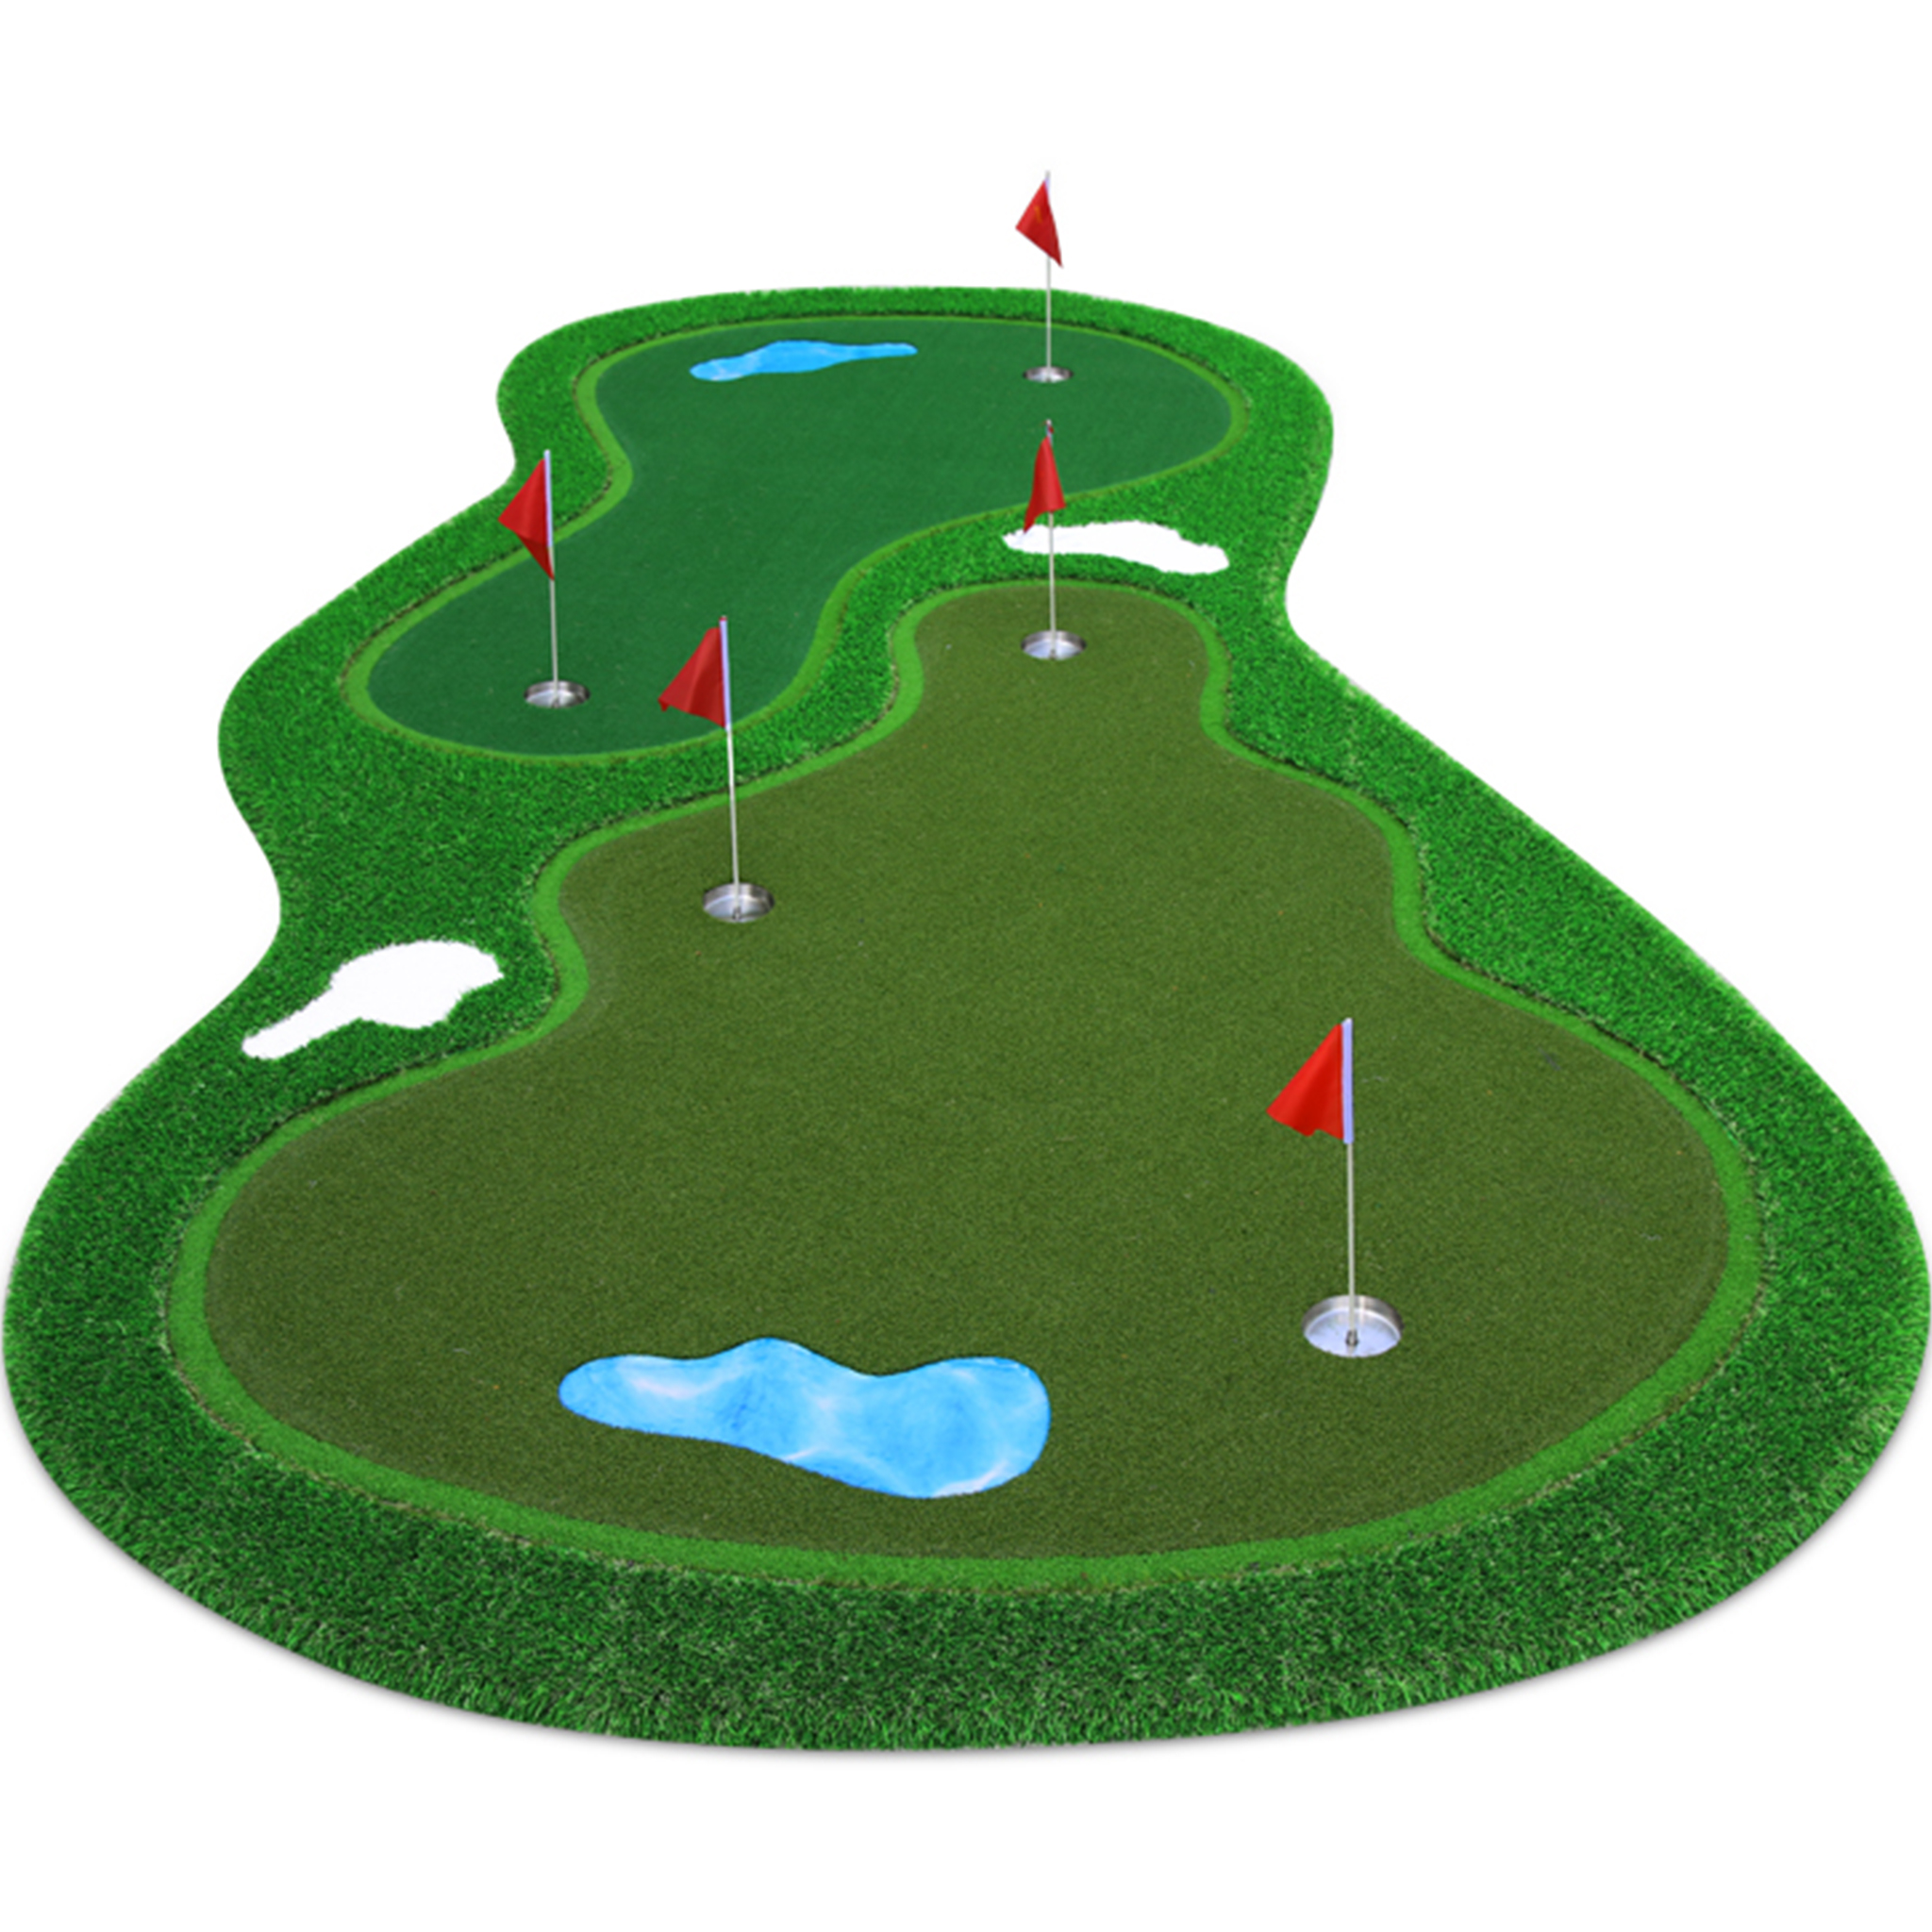 Golfmatta Pro | Dubbla greener och vattenhinder | 4x2m